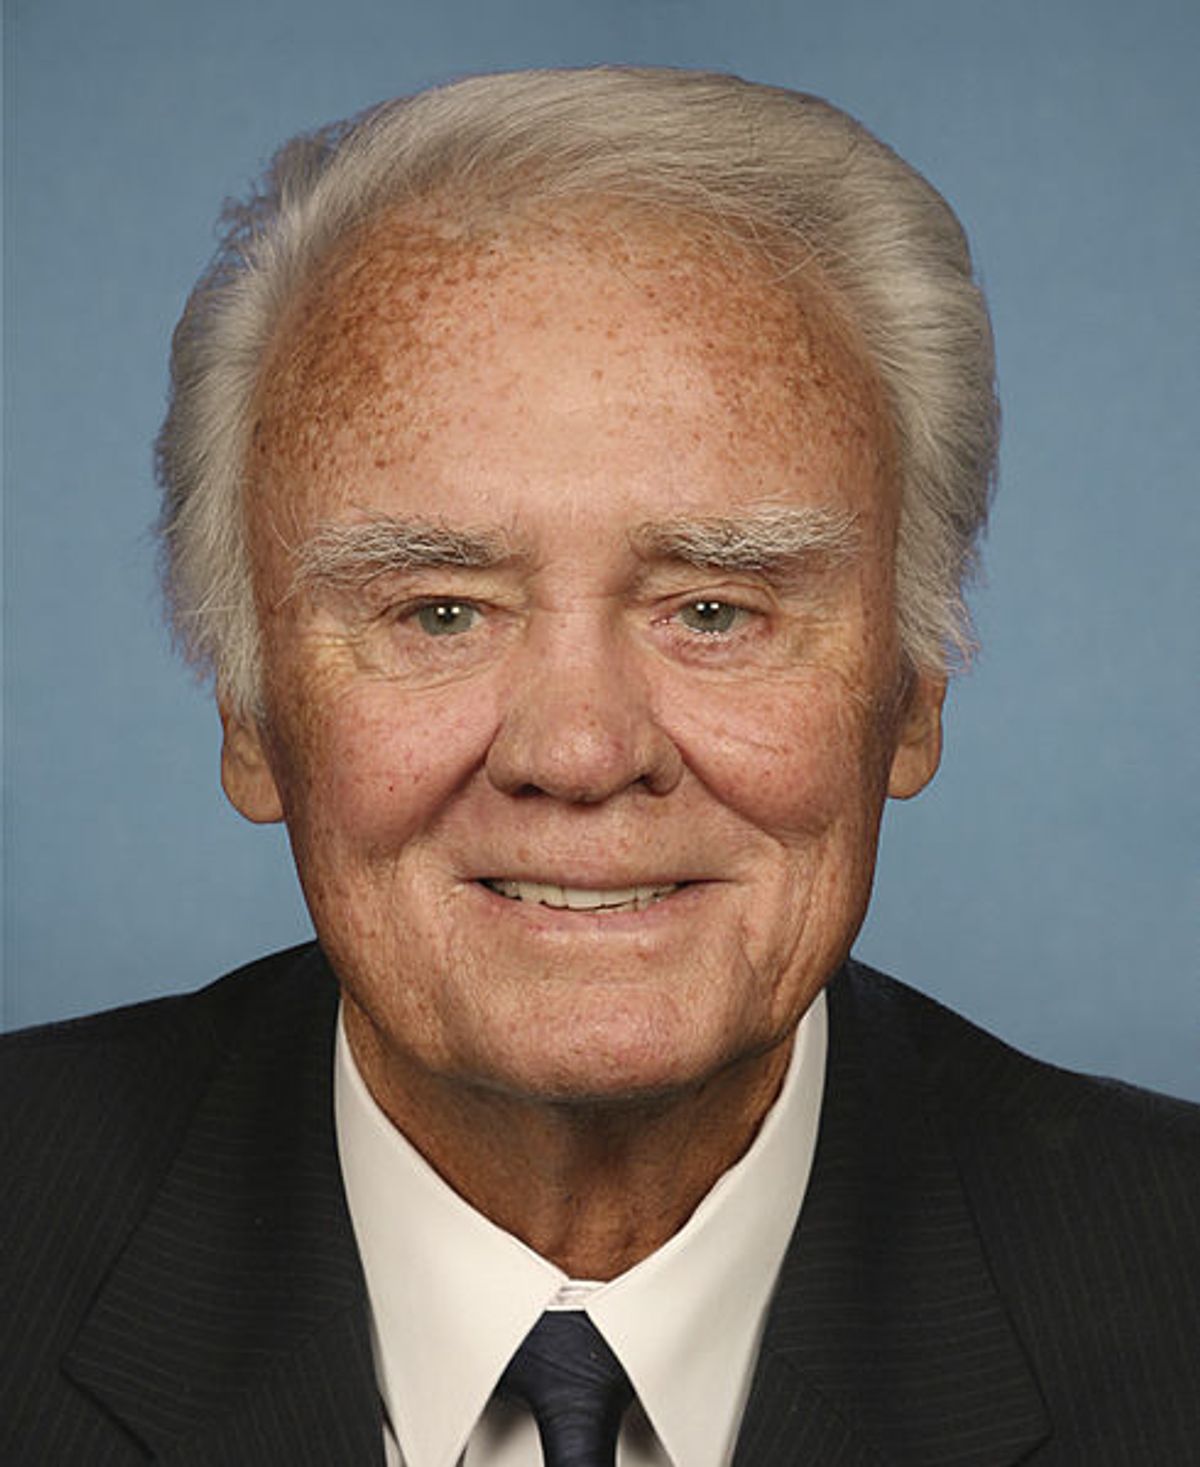 Rep. Bill Young, R-Fla. (Wikipedia)